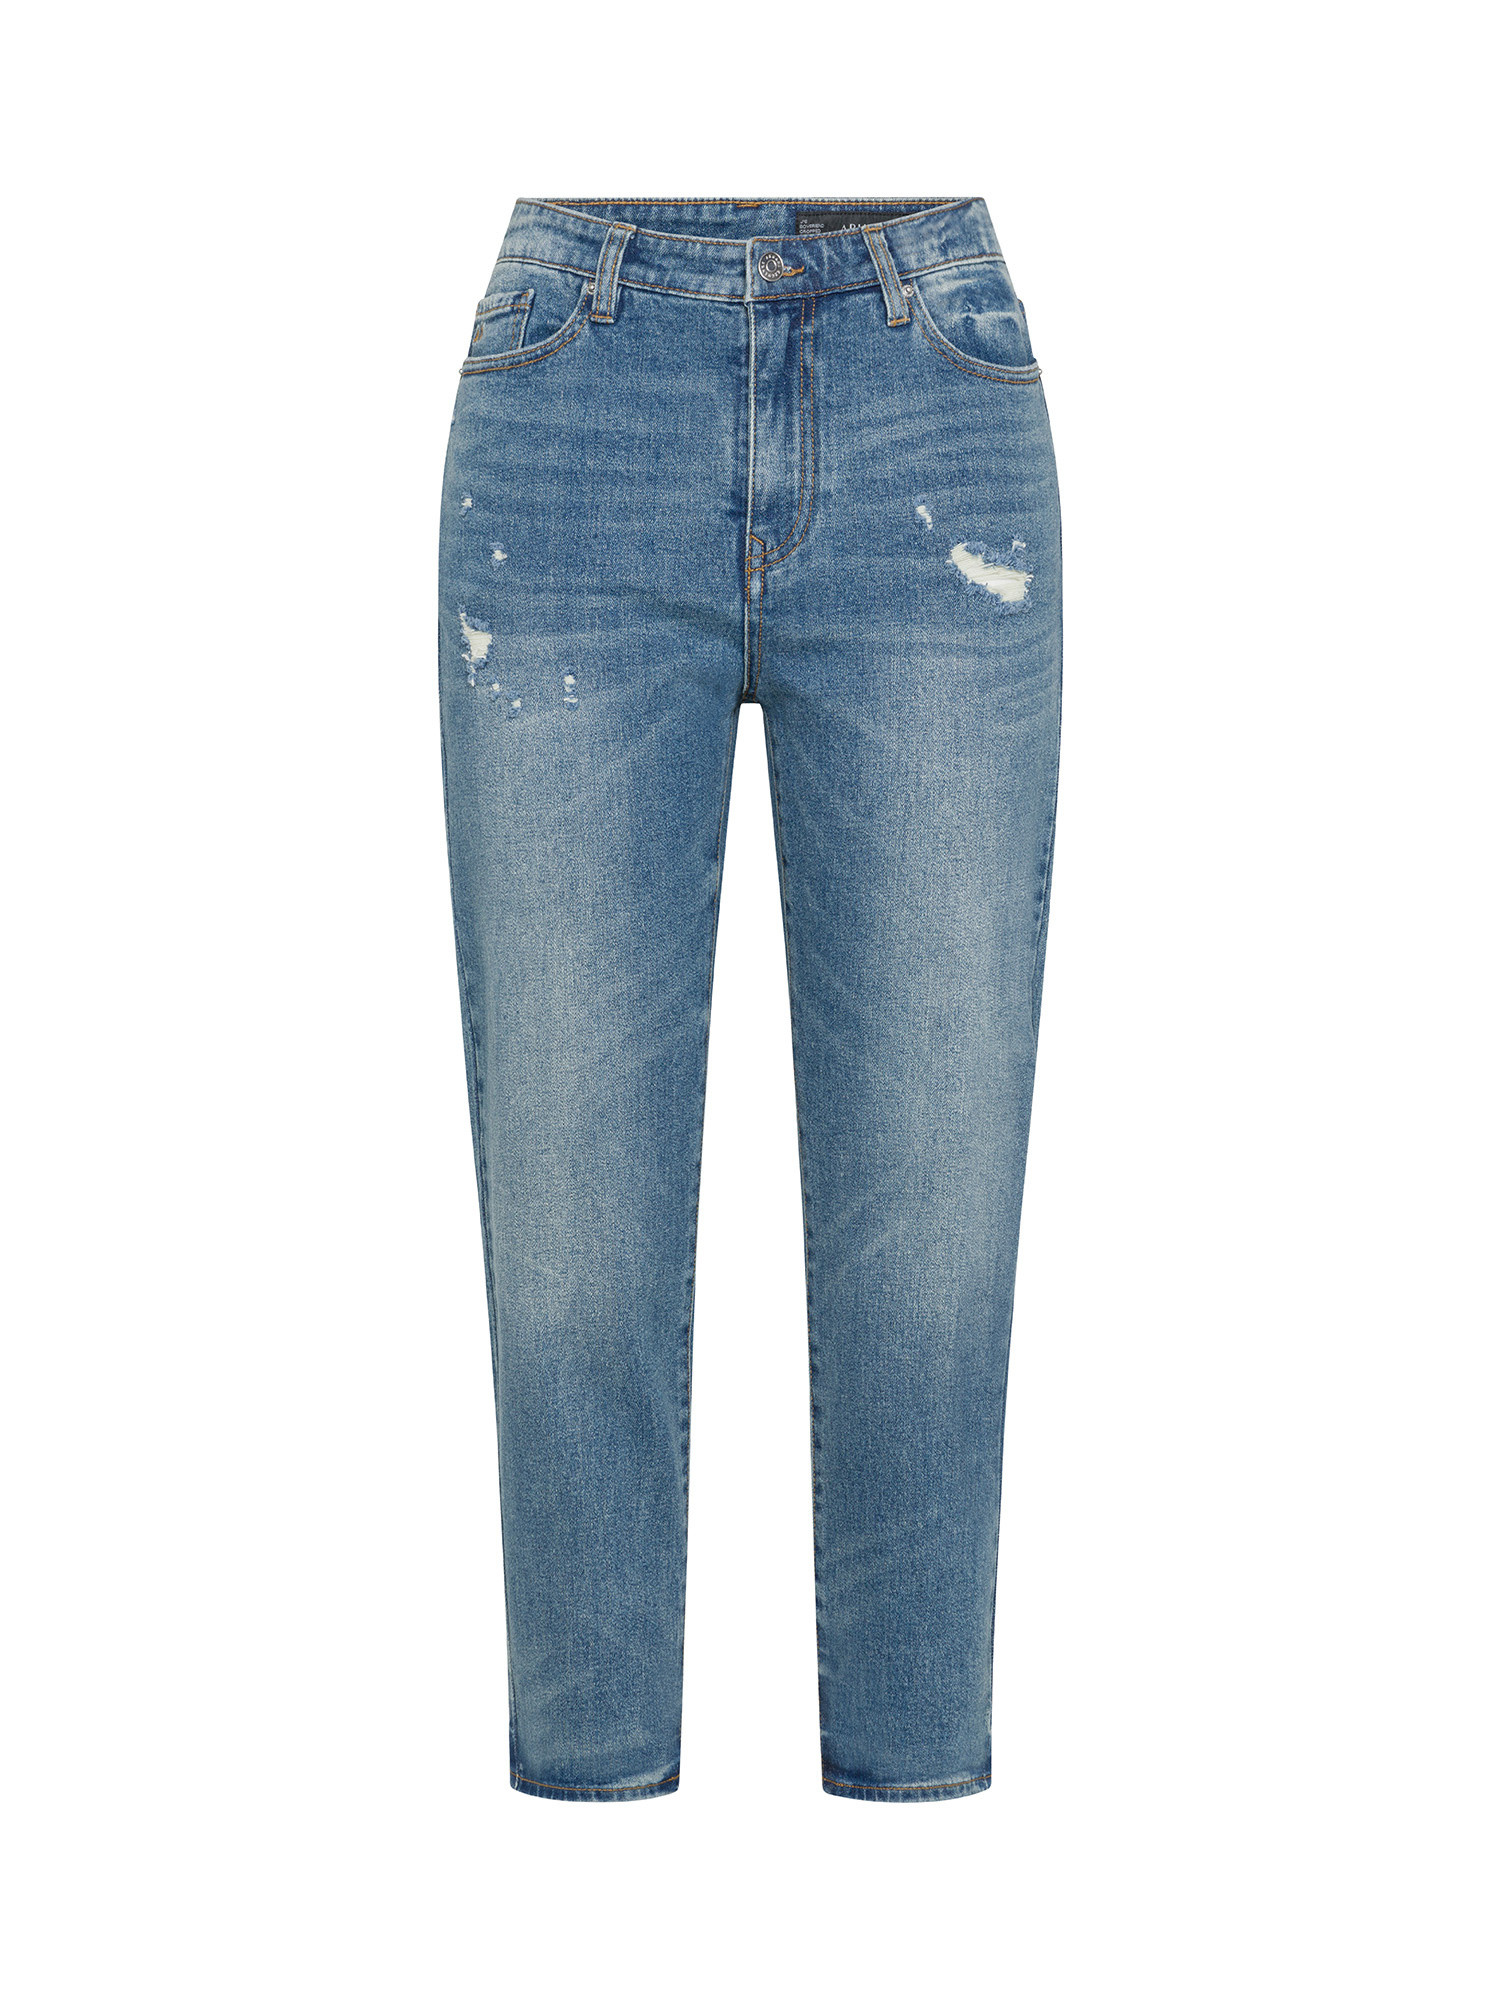 Armani Exchange - Five pocket jeans with logo, Denim, large image number 0